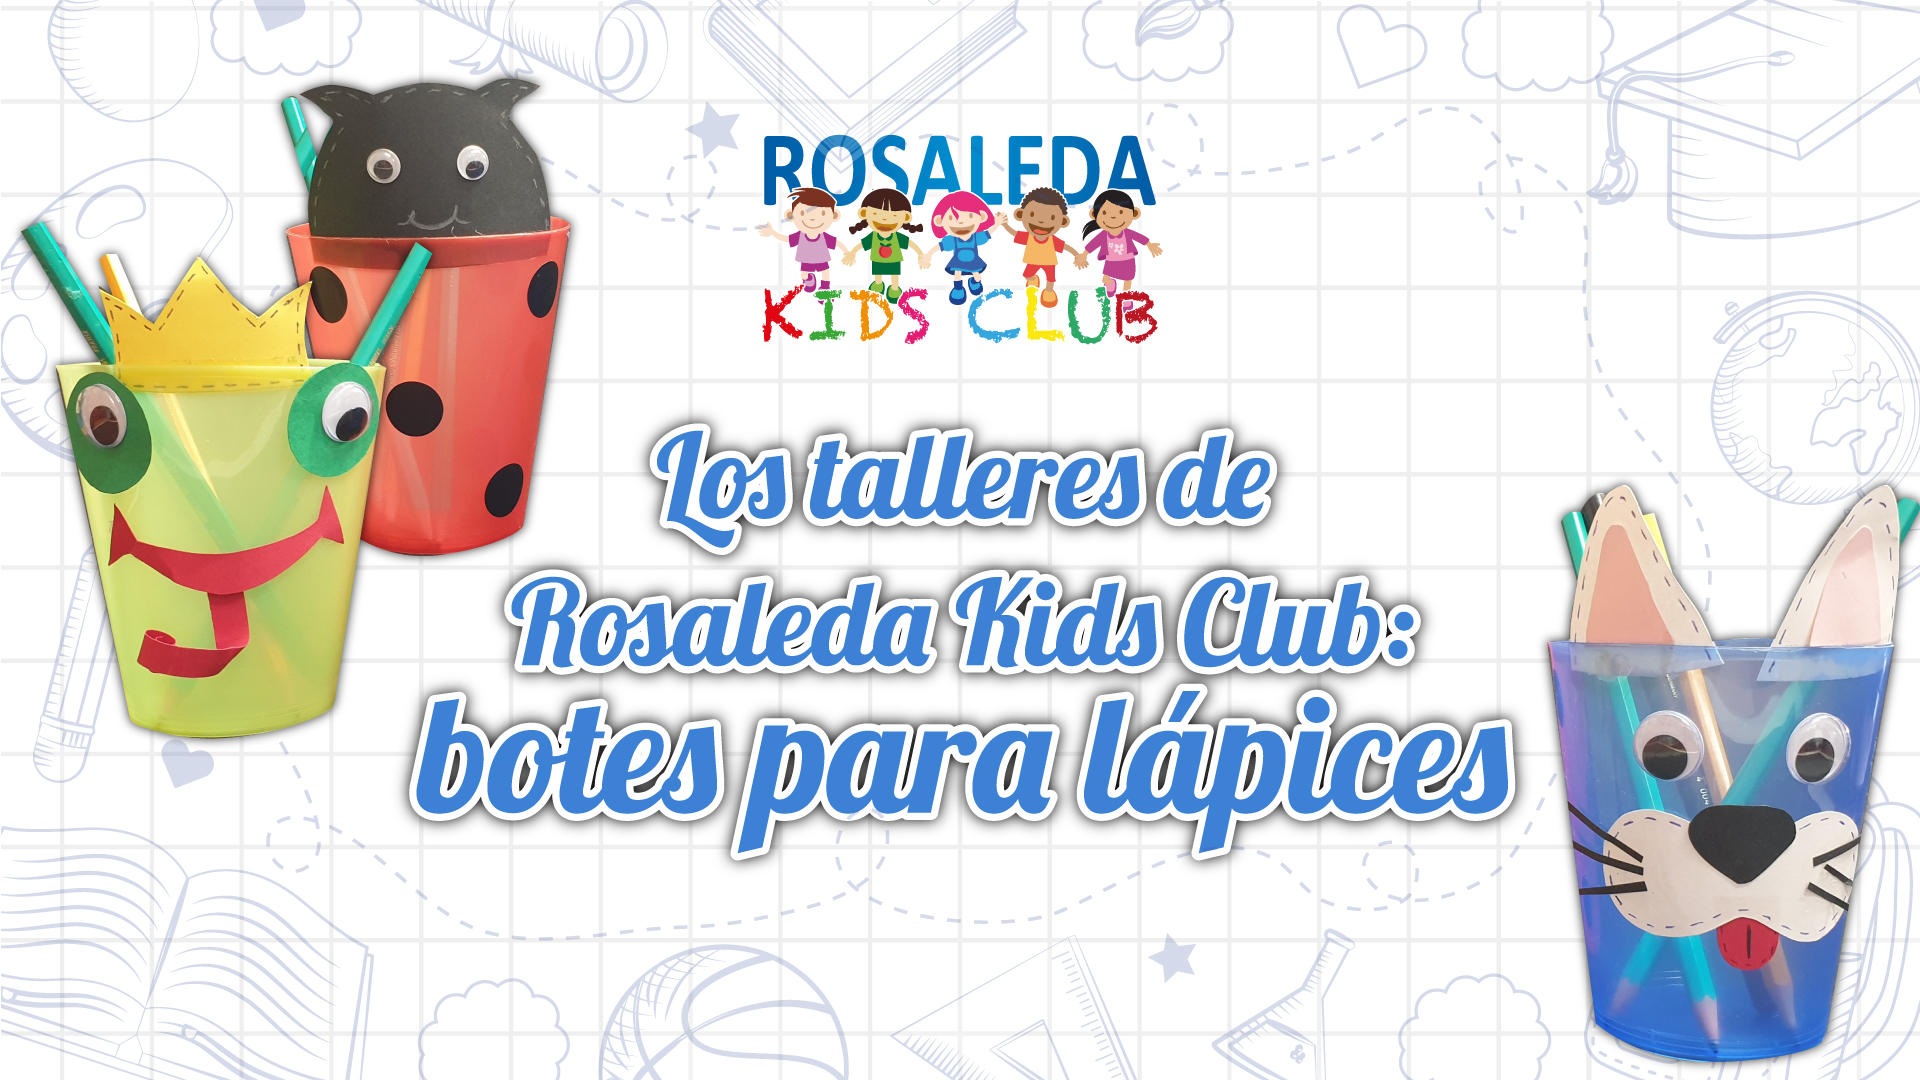 Los talleres de Rosaleda Kids Club: lapiceros